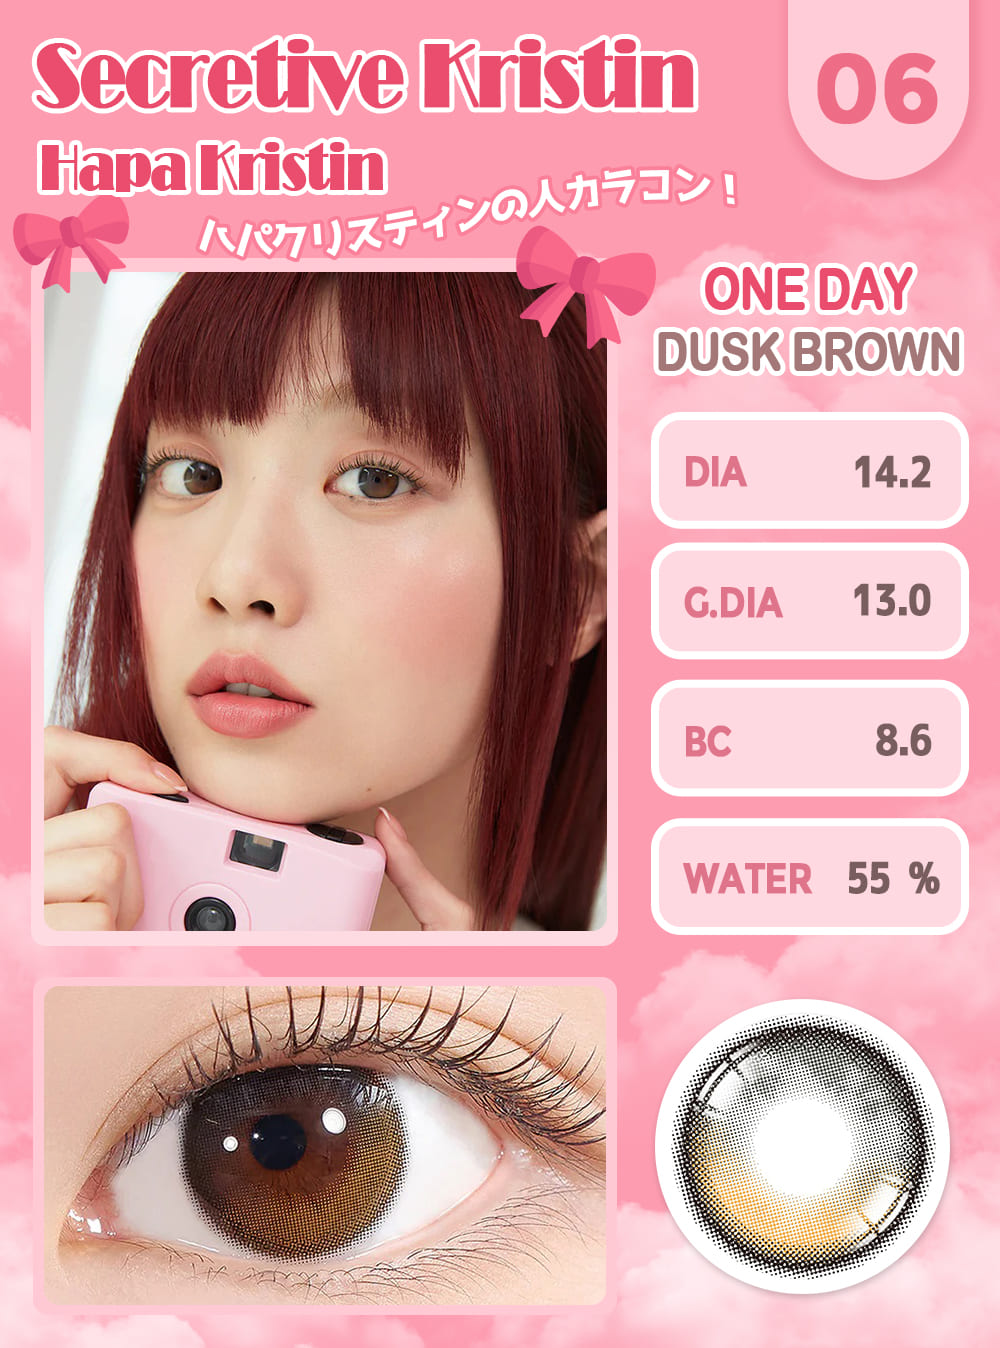 Hapakristin,Korean color contacts,color lens,K-pop idol lens,Special sale event,Sale